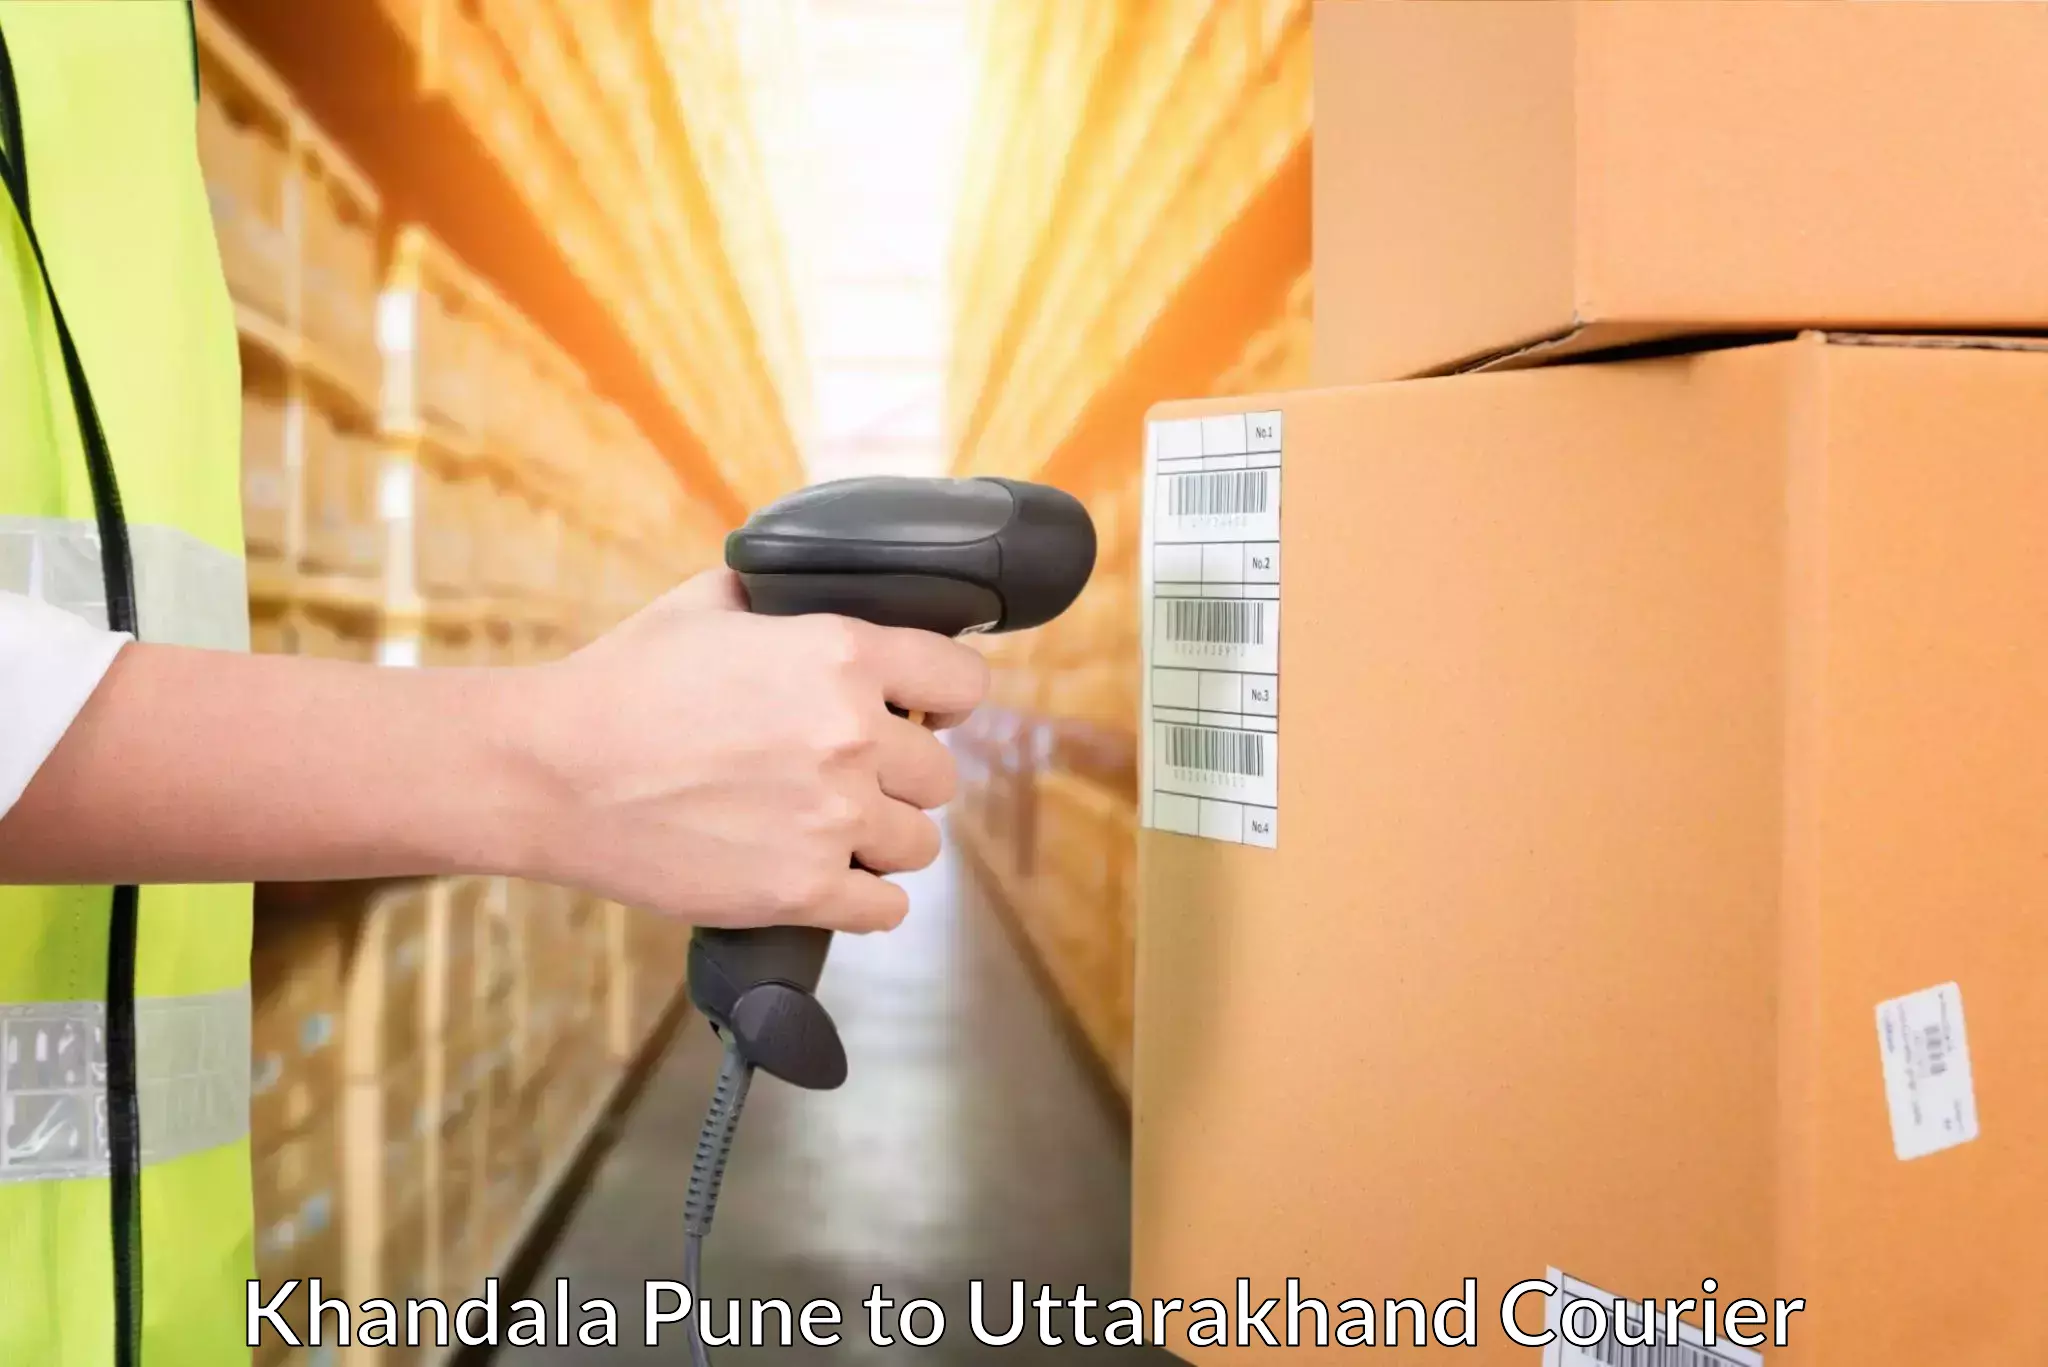 Flexible parcel services Khandala Pune to Dwarahat